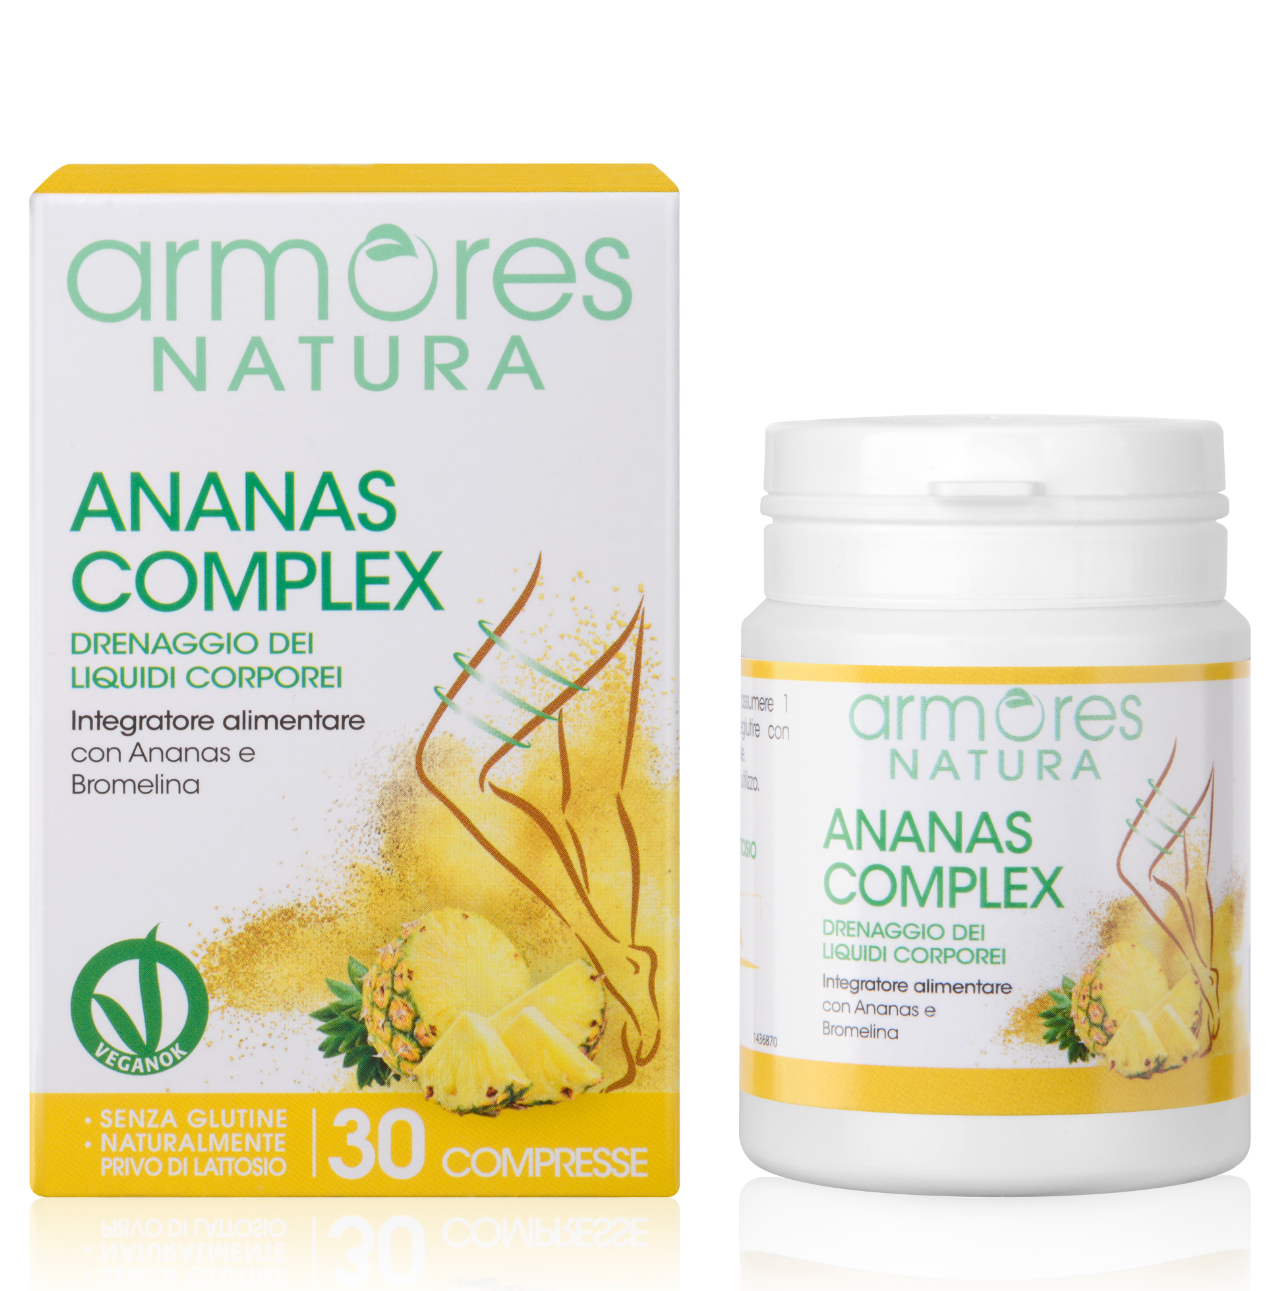 Ananas complex